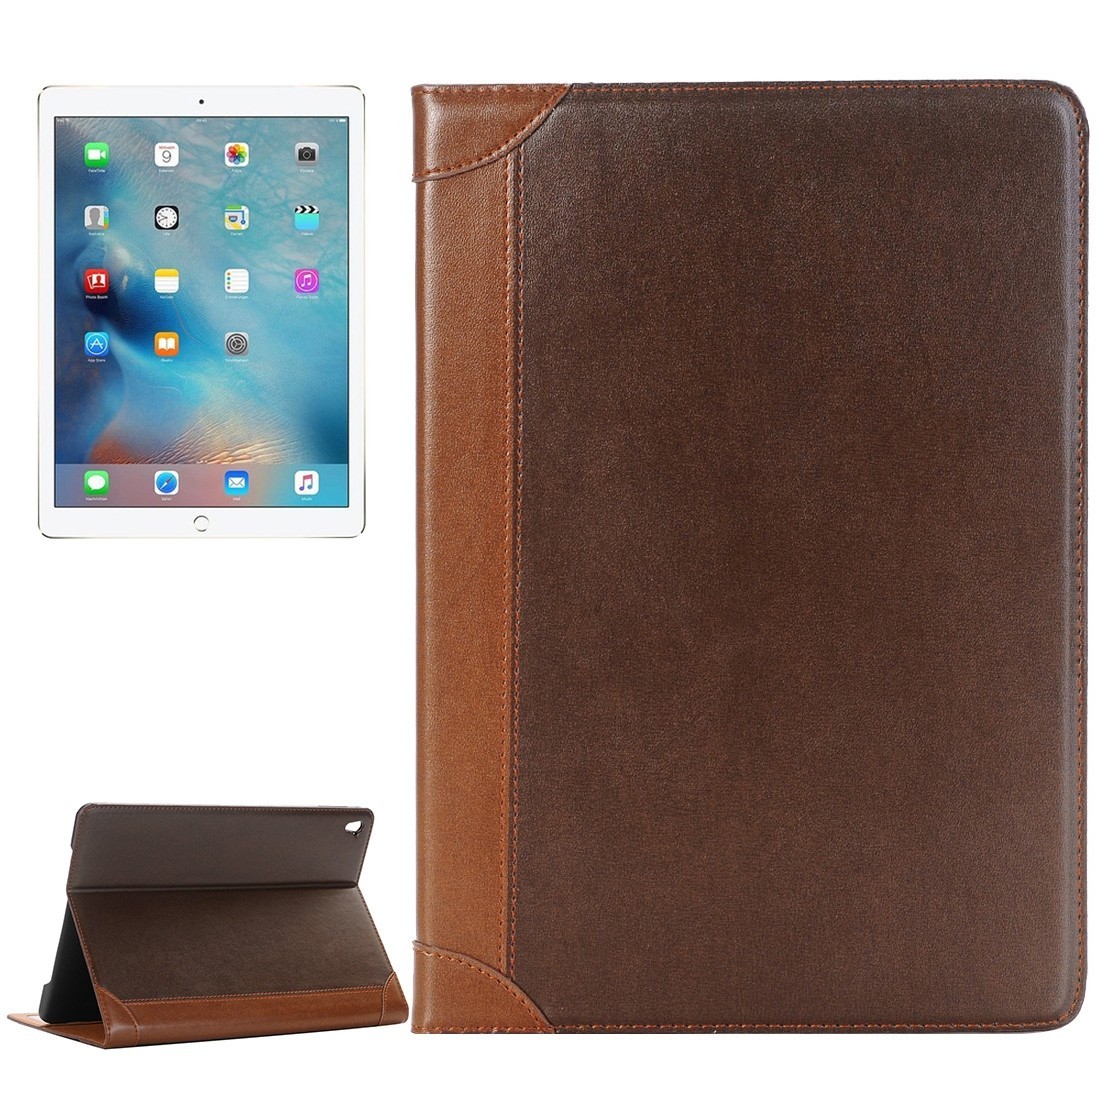 Кожаный чехол в стиле книжки для iPad Pro 9.7 (коричневый)